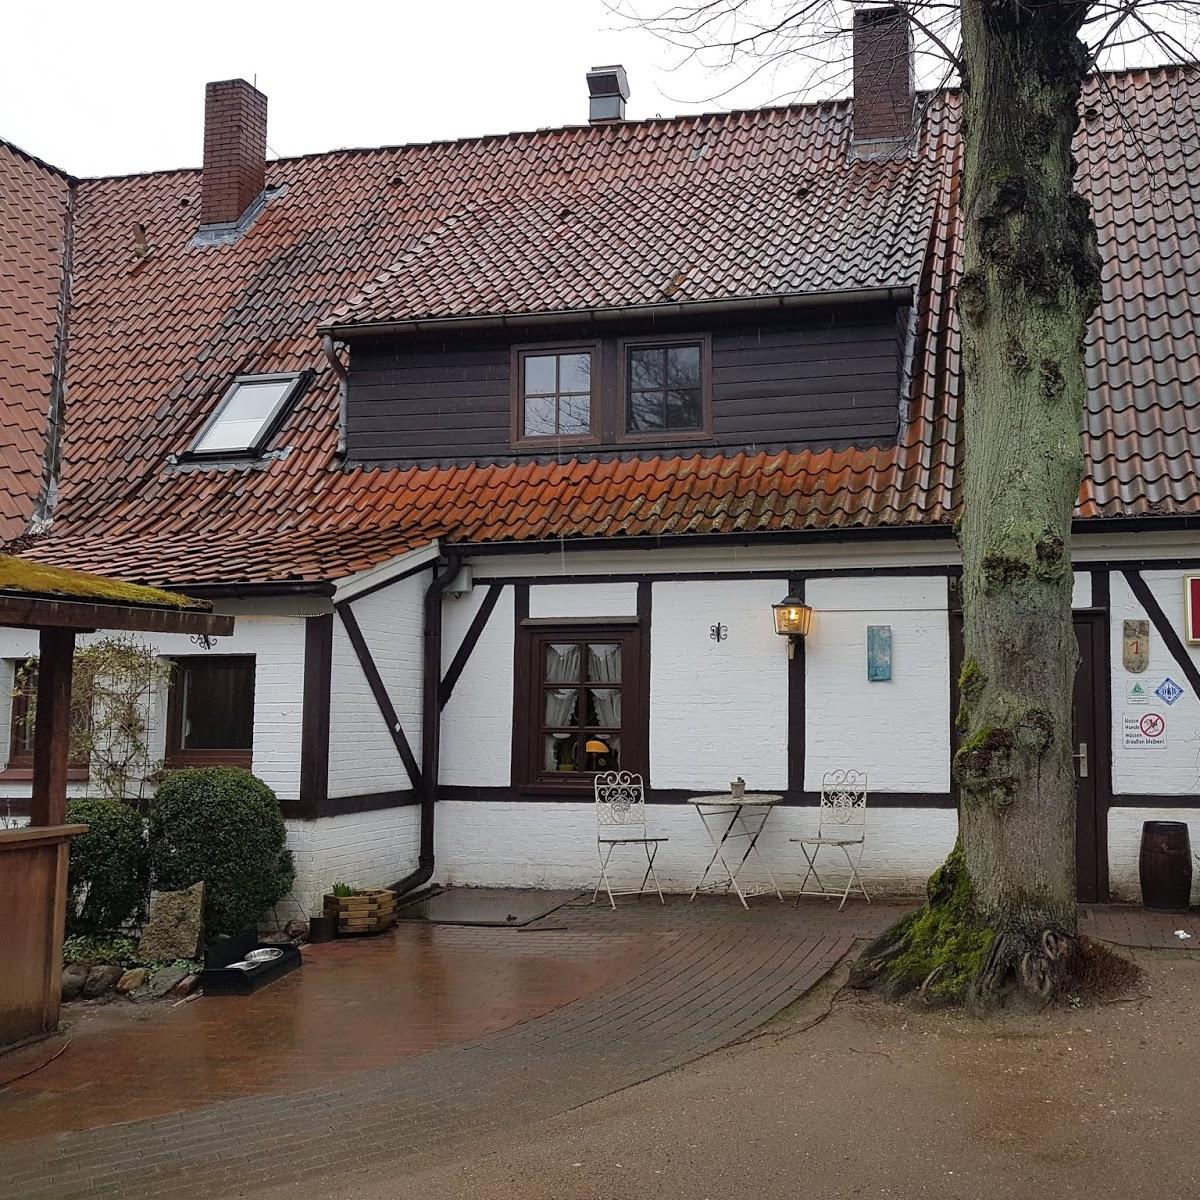 Restaurant "Landhaus Schäfer" in  Lütjensee